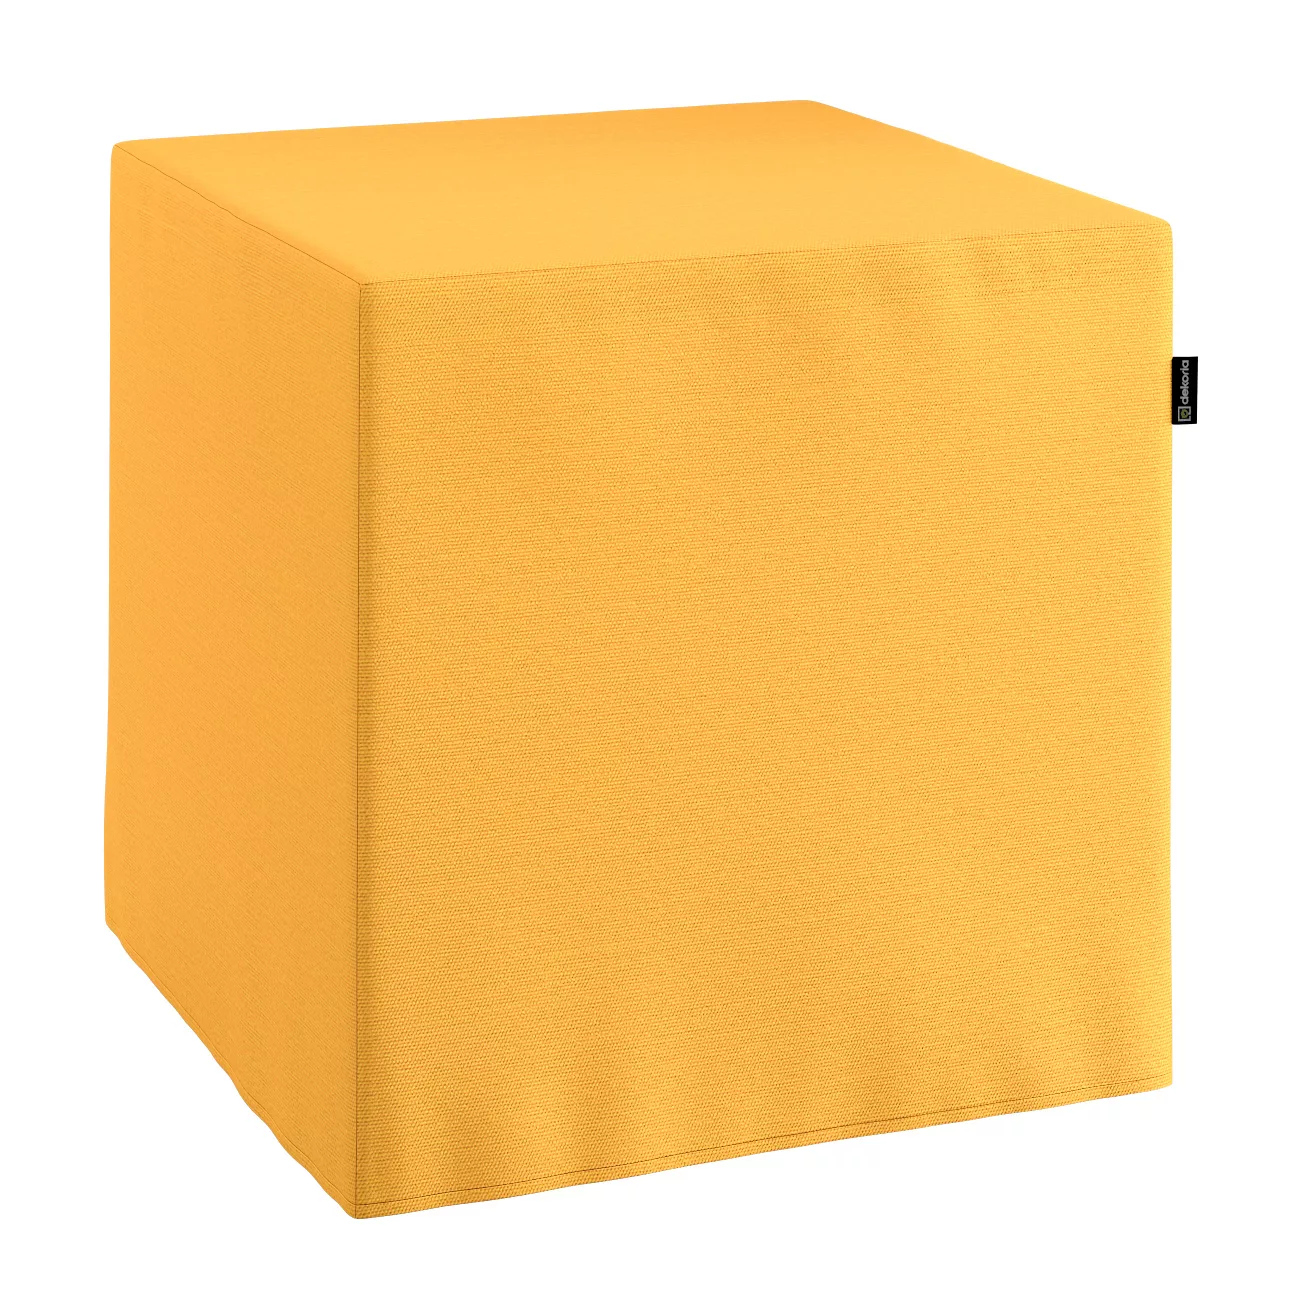 Bezug für Sitzwürfel, gelb, Bezug für Sitzwürfel 40 x 40 x 40 cm, Loneta (1 günstig online kaufen